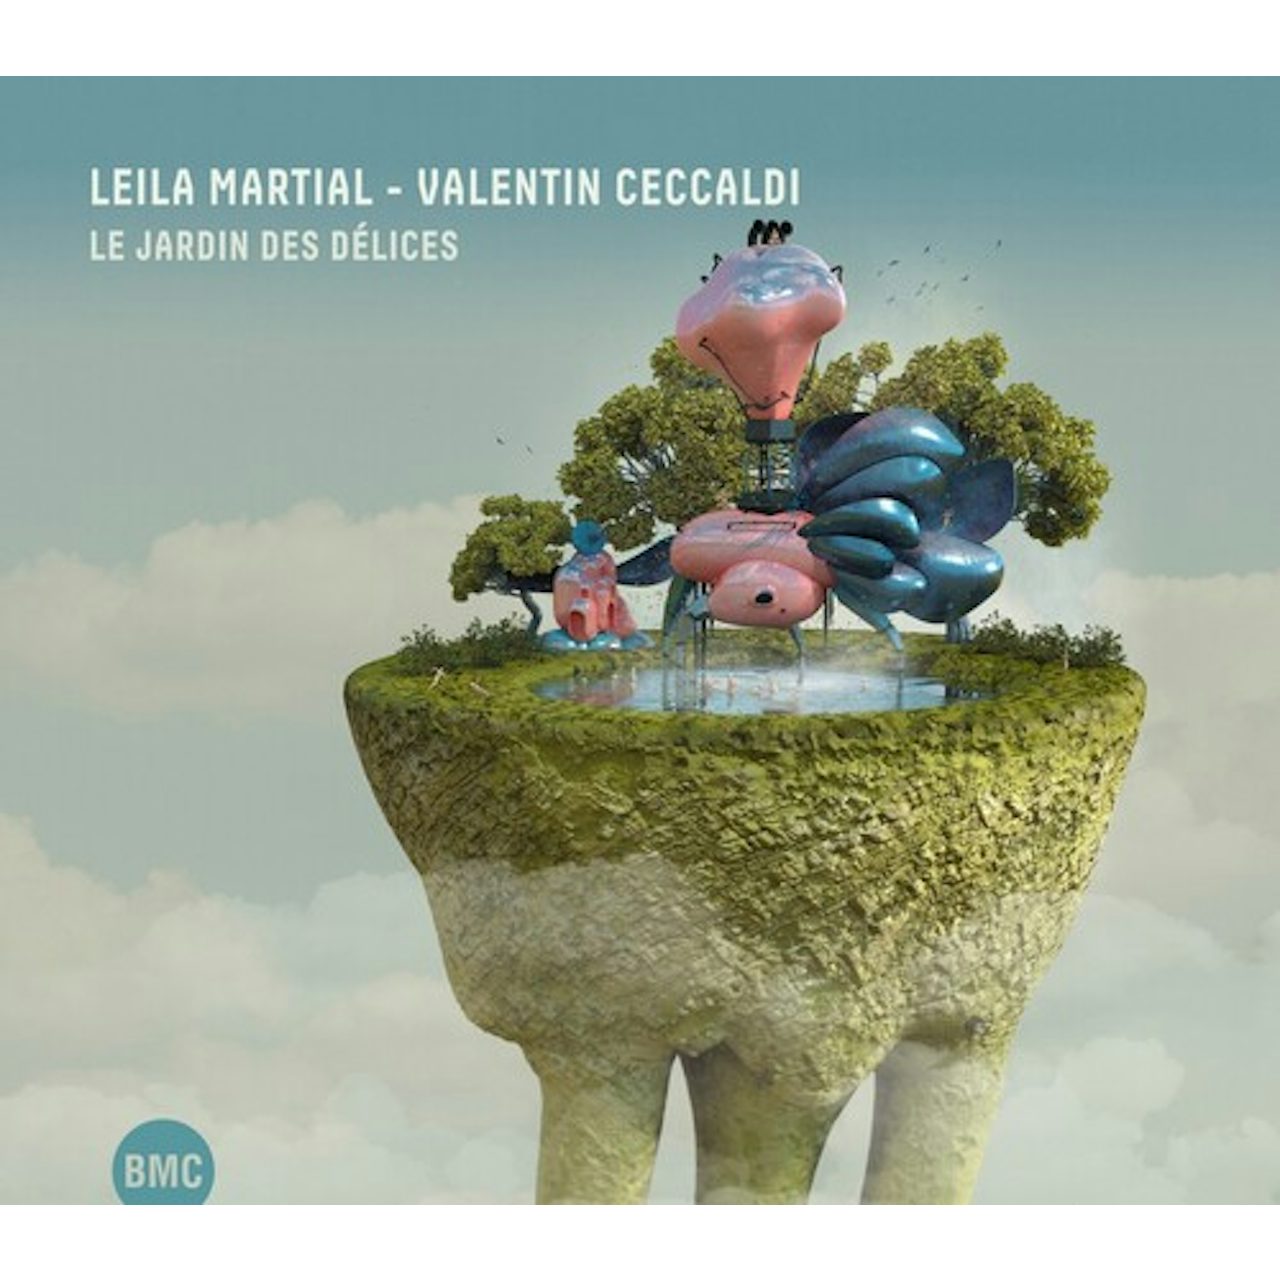 LEILA MARTIAL - VALENTIN CECCALDI - Le Jardin des Délices